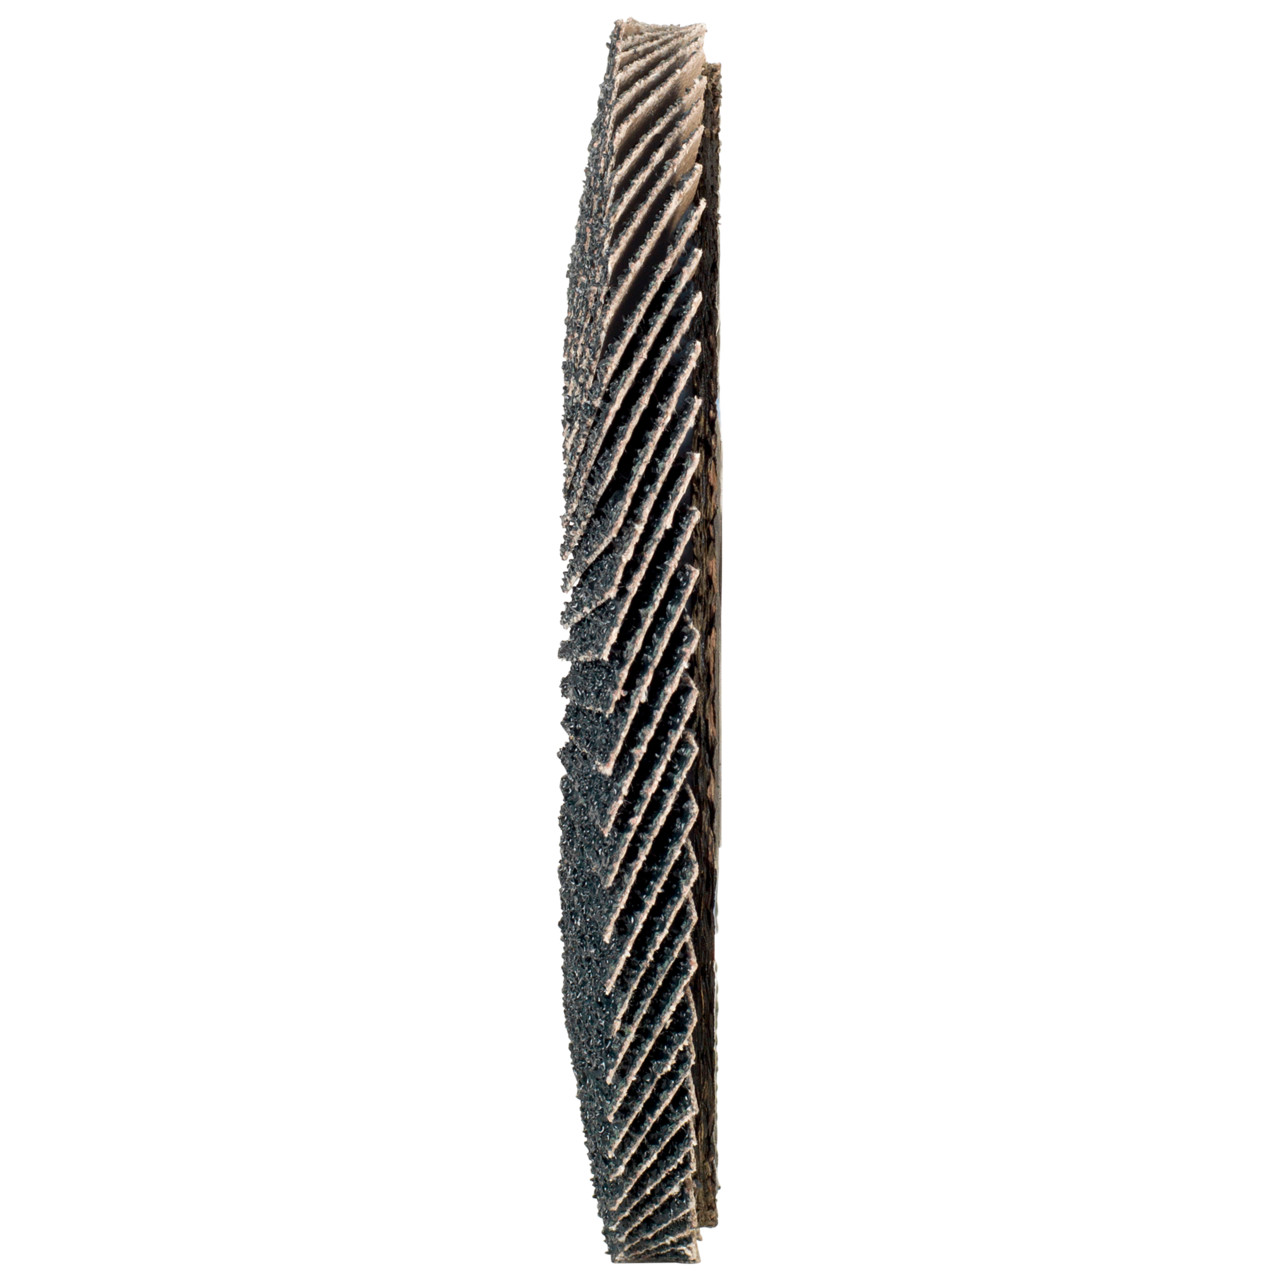 Rondella dentata Tyrolit DxH 115x22.2 2in1 per acciaio e acciaio inox, P60, forma: 27A - versione a gomito (versione con corpo portante in fibra di vetro), Art. 668644